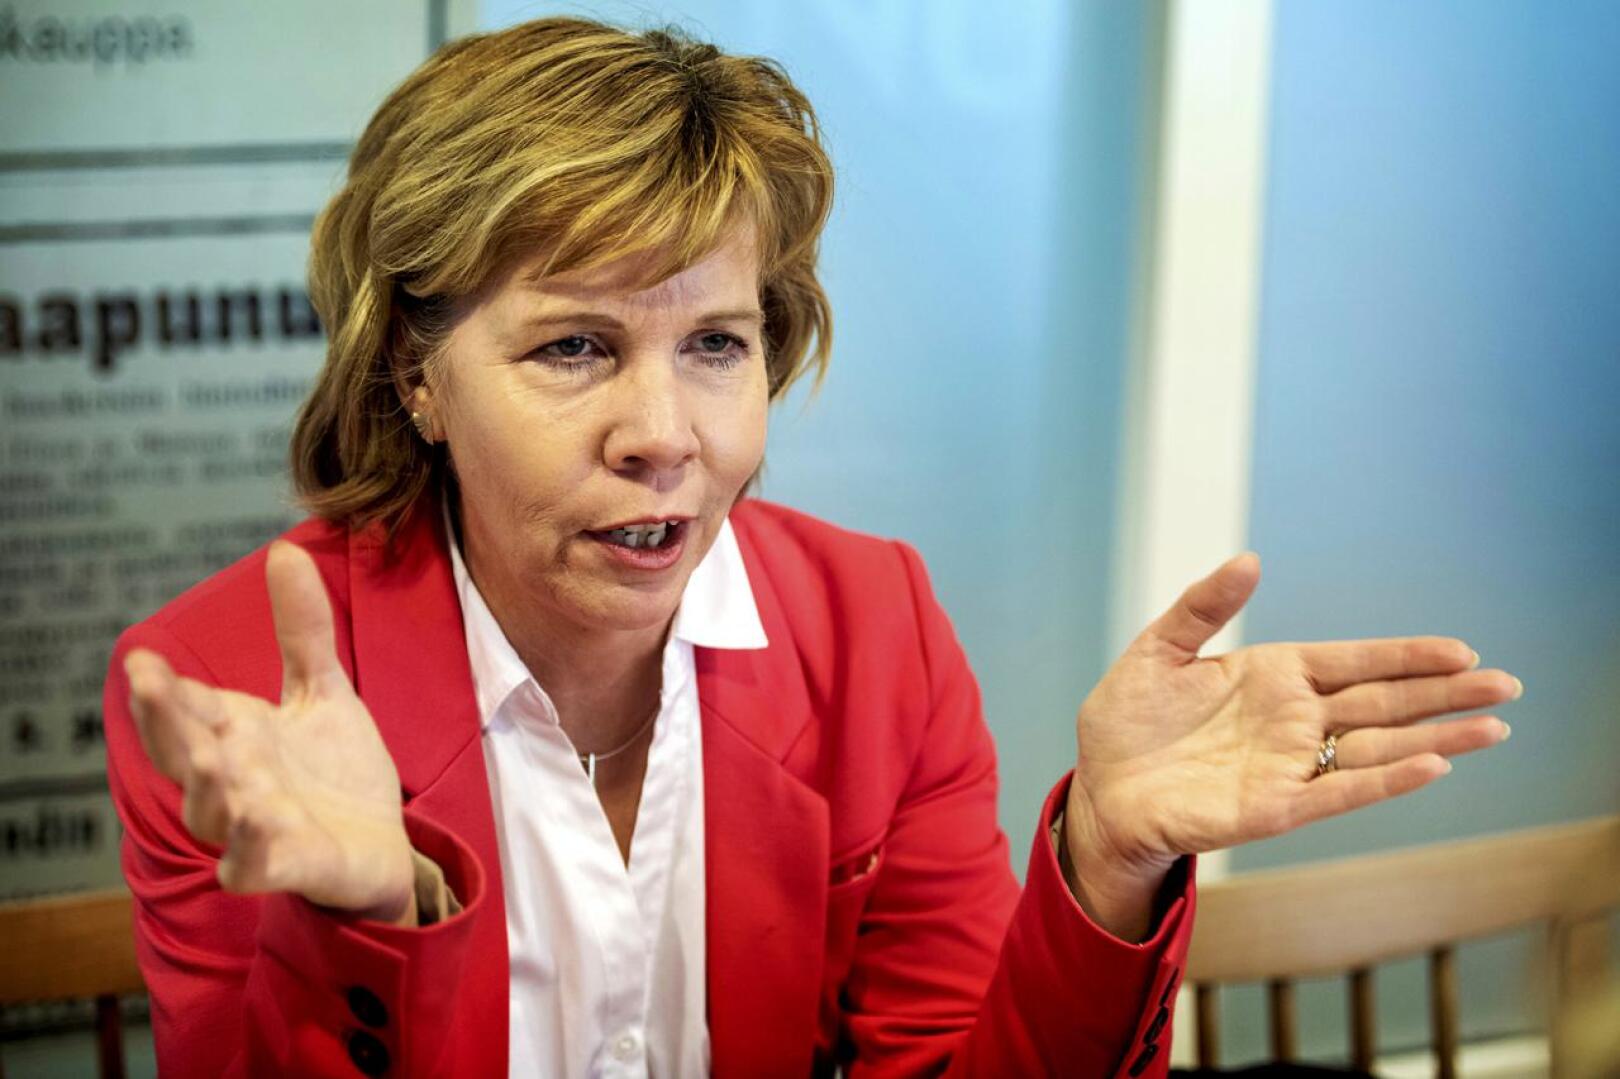 Oikeusministeri Anna-Maja Henriksson ei lämmennyt oppositiosta tuleville vaateille siirtää aluevaaleja.